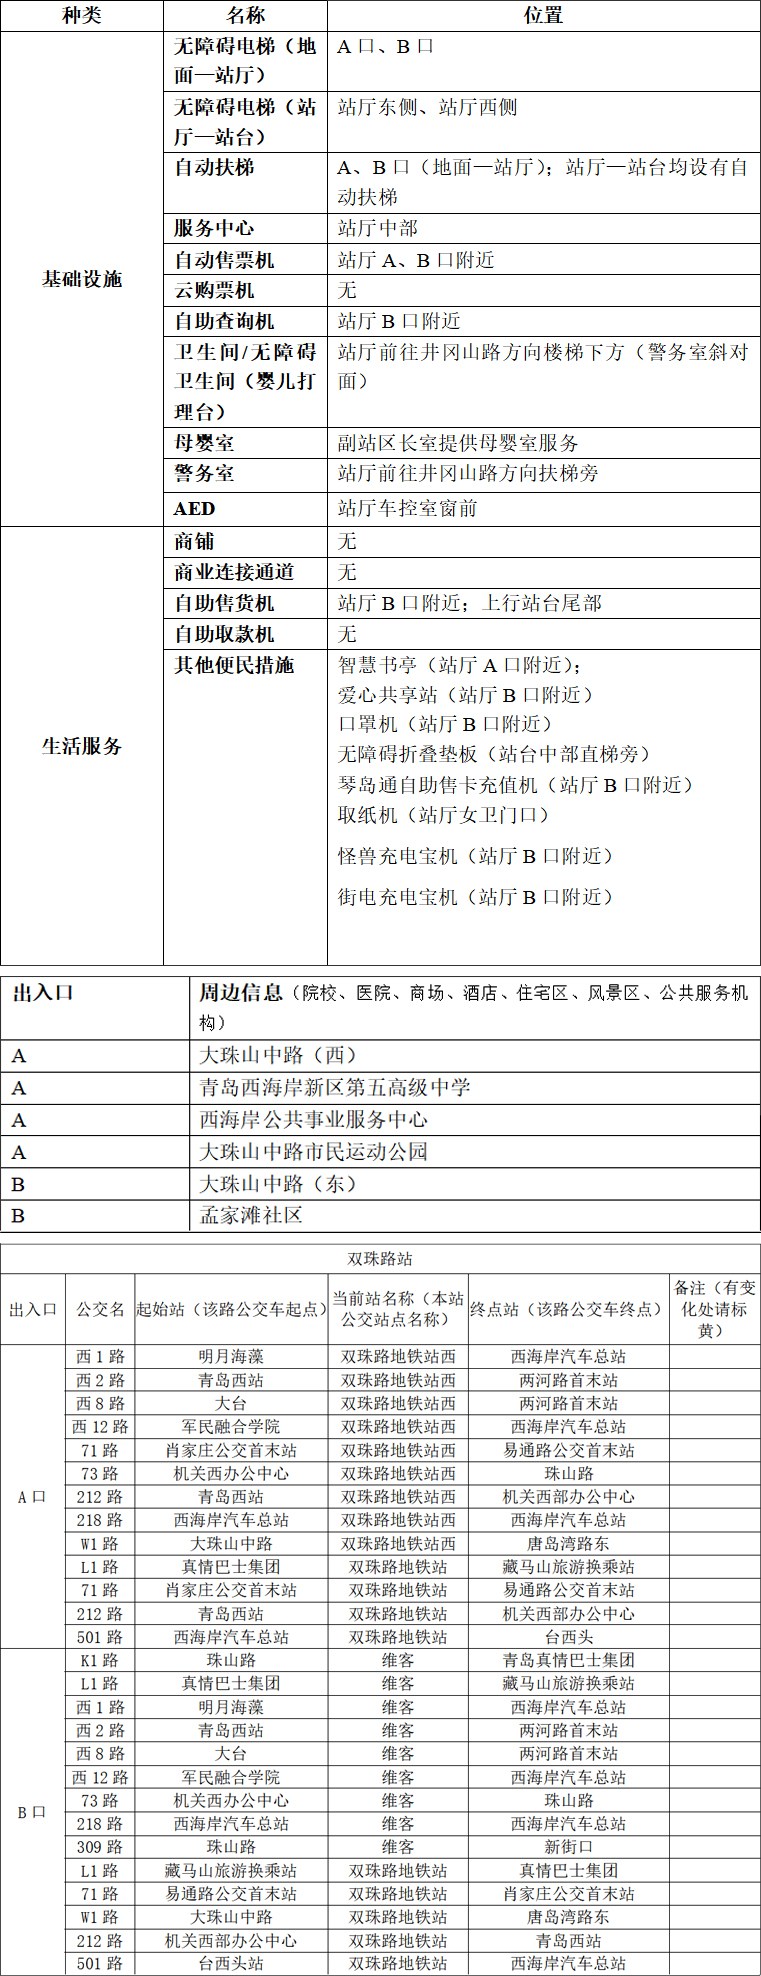 附件1：青岛地铁APP站点信息-双珠路站-2023.03.22(1) 拷贝.jpg